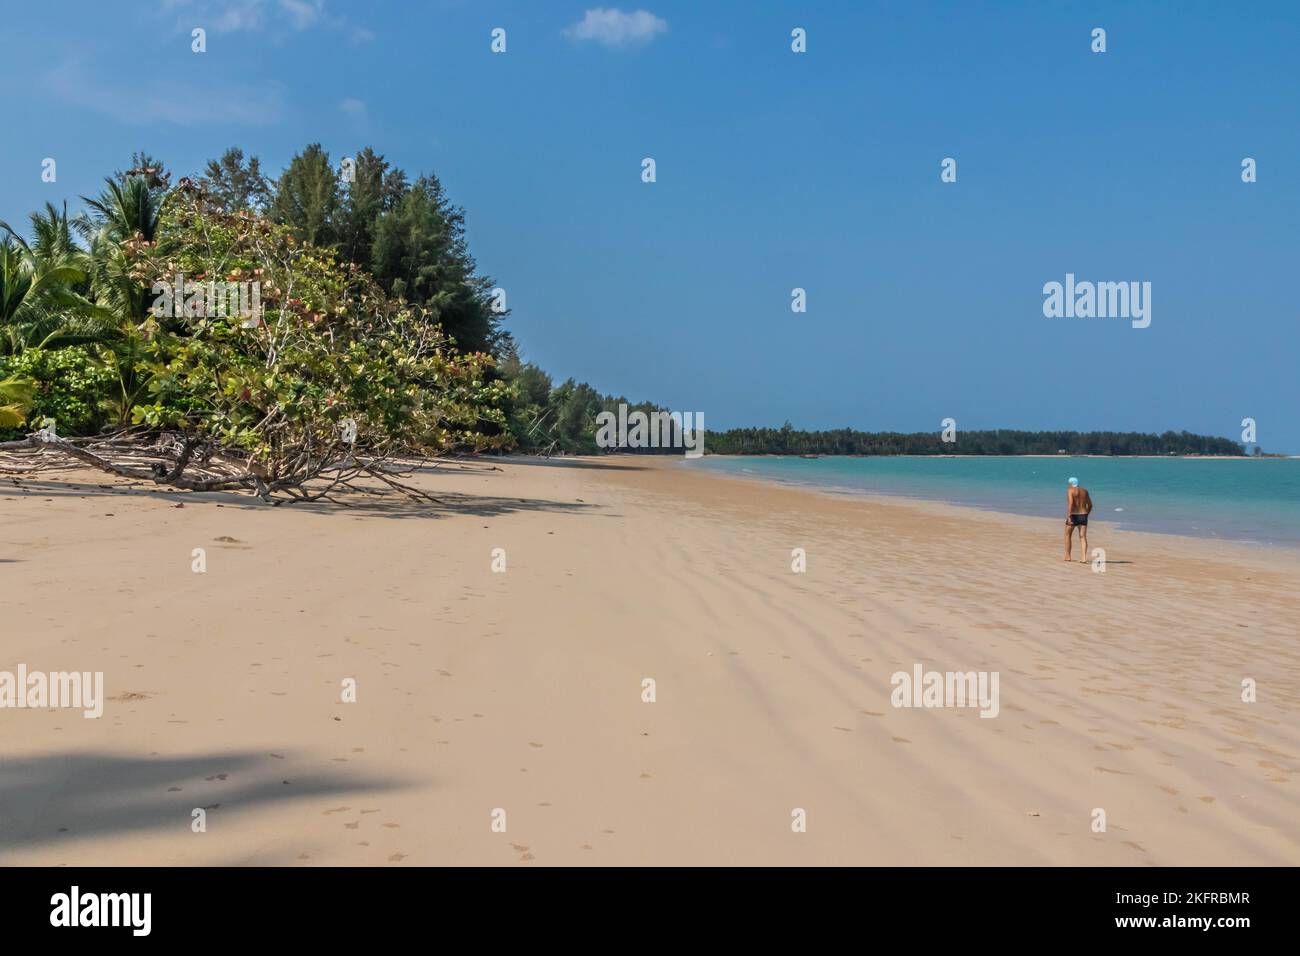 Alone on the beach, Coconut Beach, Khao Lak, Thailand Stock Photo